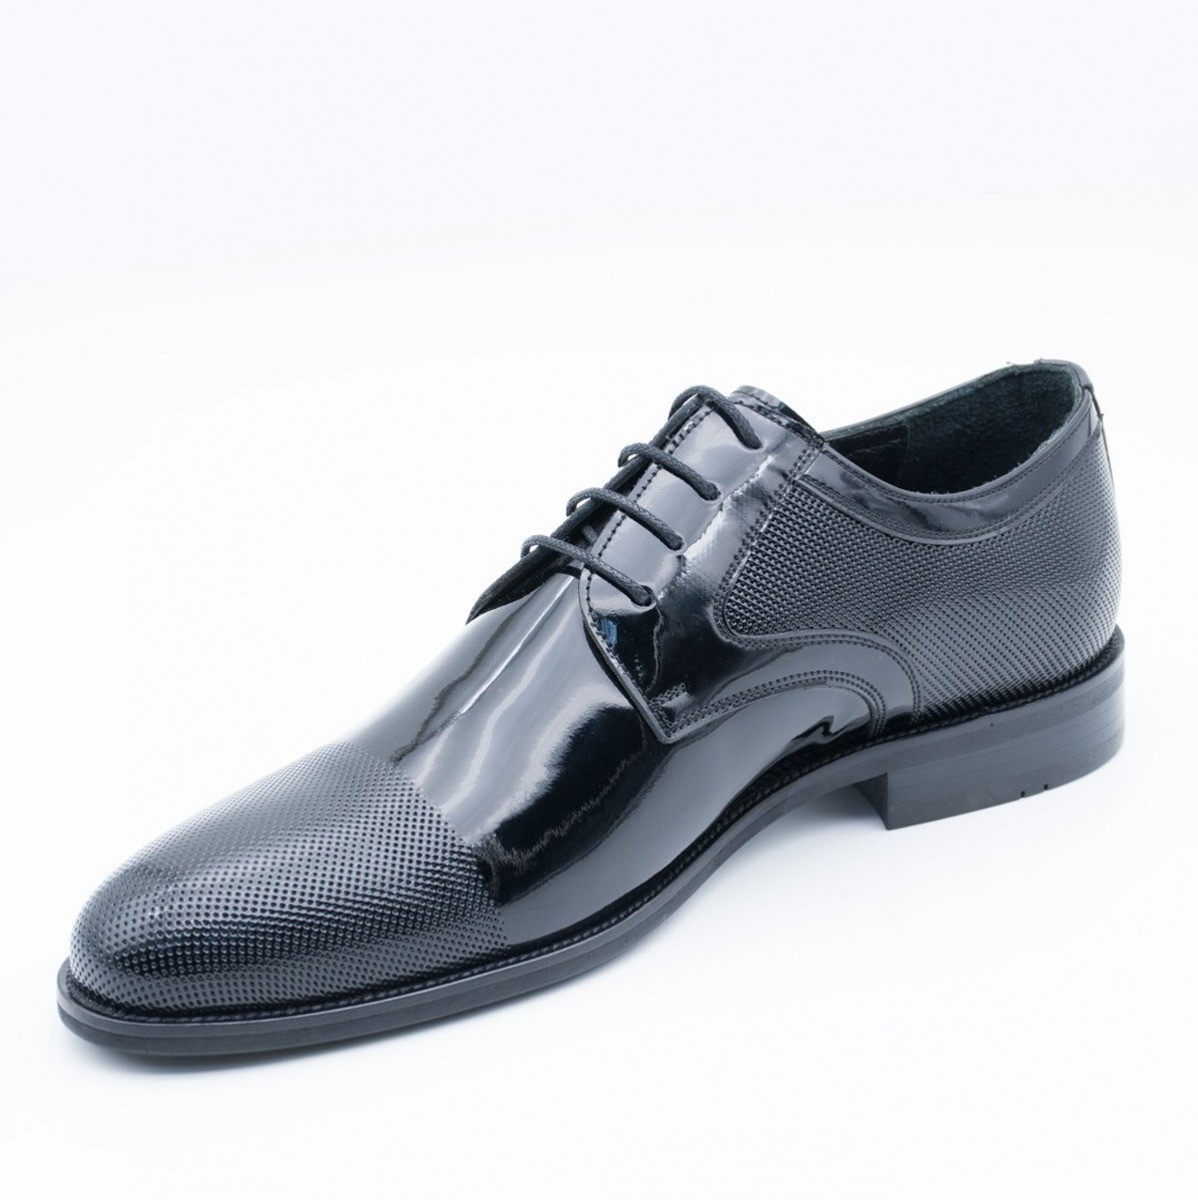 Flo Erkek Deri Klasik Ayakkabı İ19523-1 M 1000 SİYAH RUGAN. 4